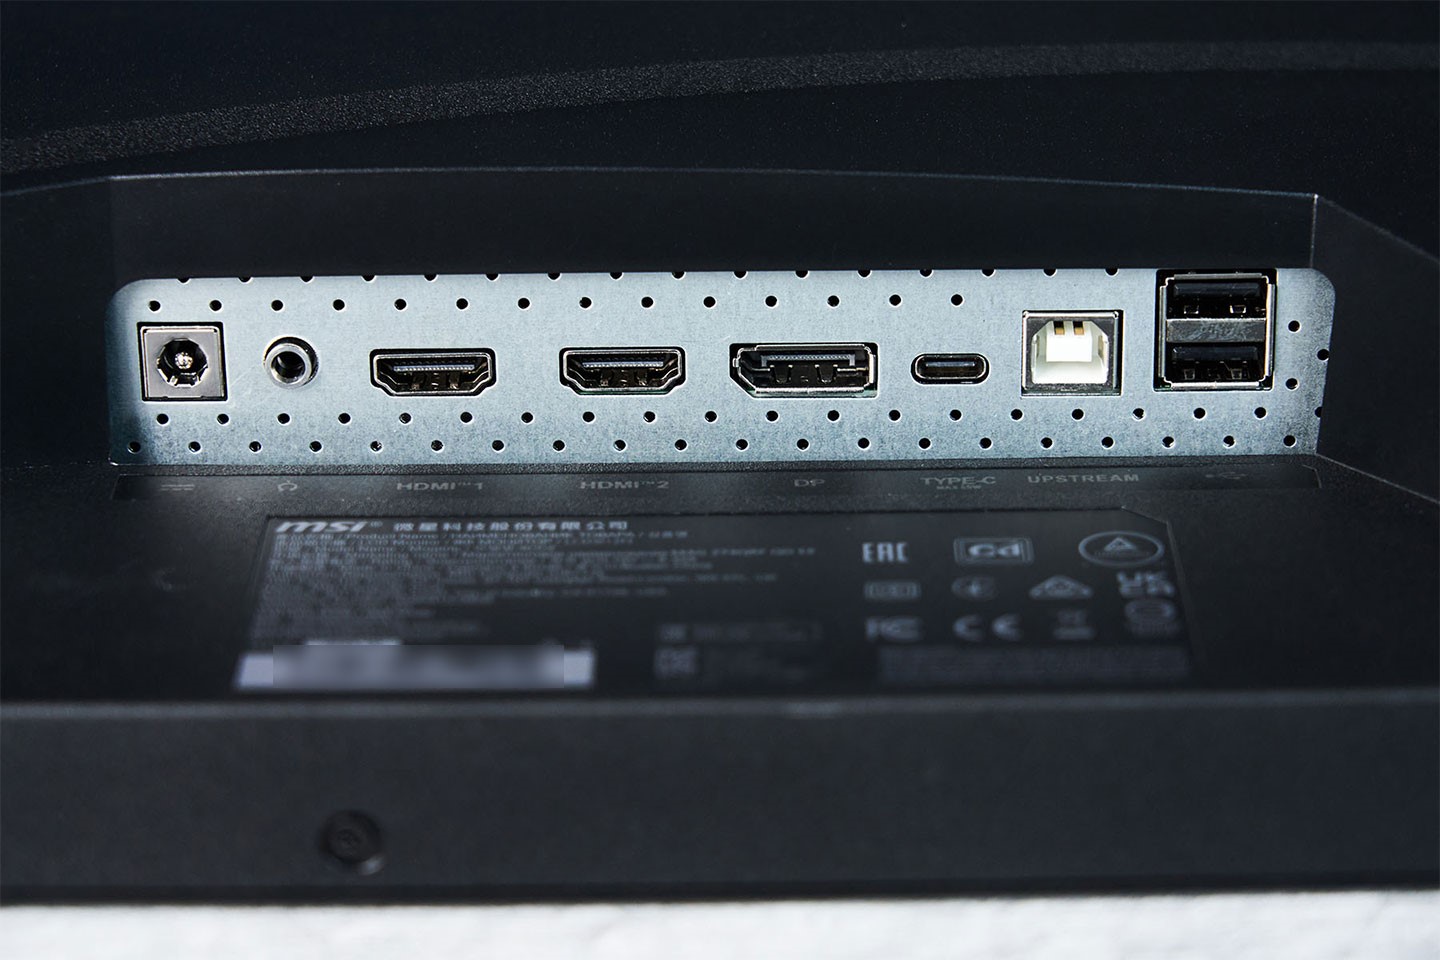 連結埠位於機背底側，由左至右分別為電源接口、3.5 mm 音源孔、HDMI 2.0b 兩組、一組 DP 1.4a、一組支援 PD 65W 供電的 USB Type-C，連結電腦端的 USB Type B 與兩組可擴充使用的 USB Type-A 埠。